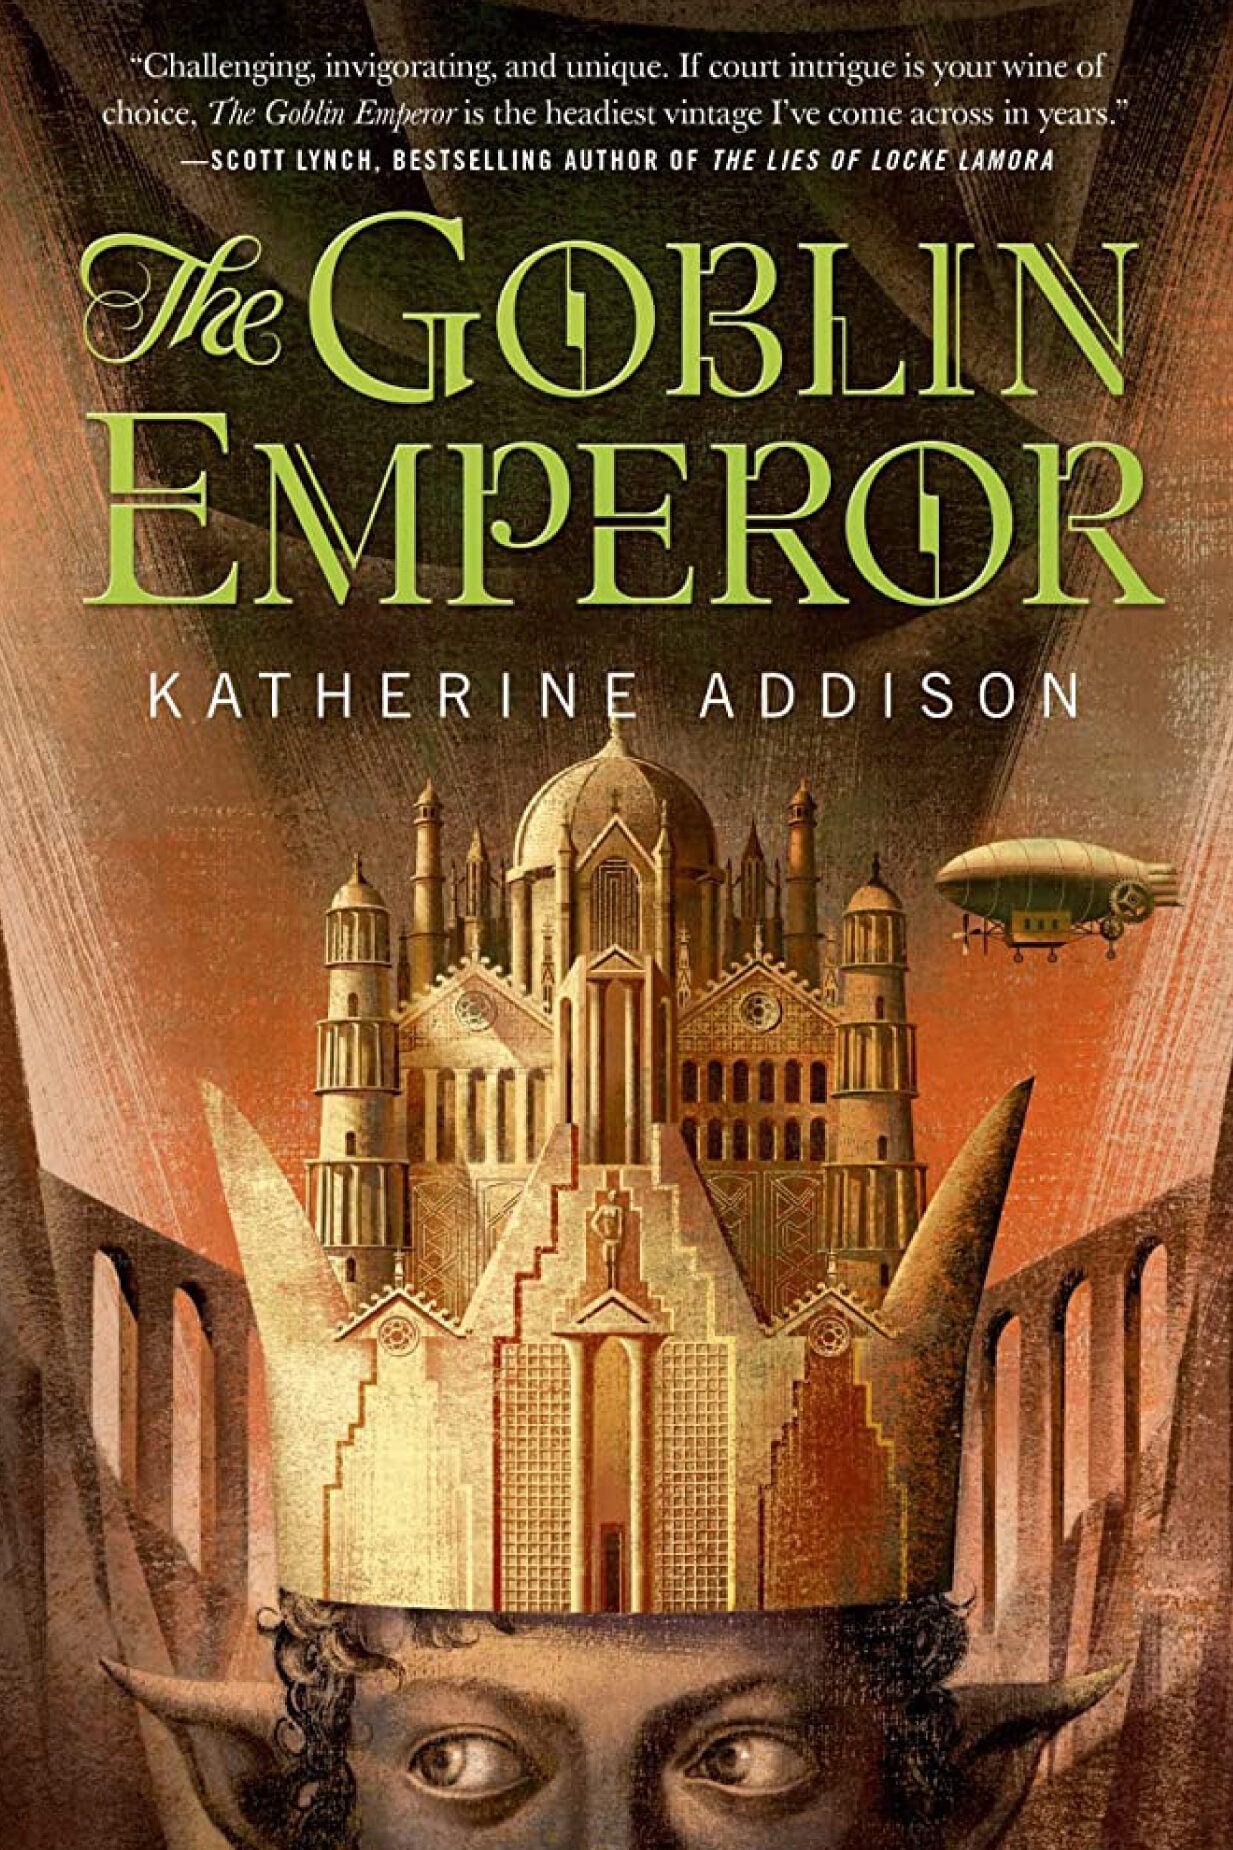 Book cover: "The Goblin Emperor."